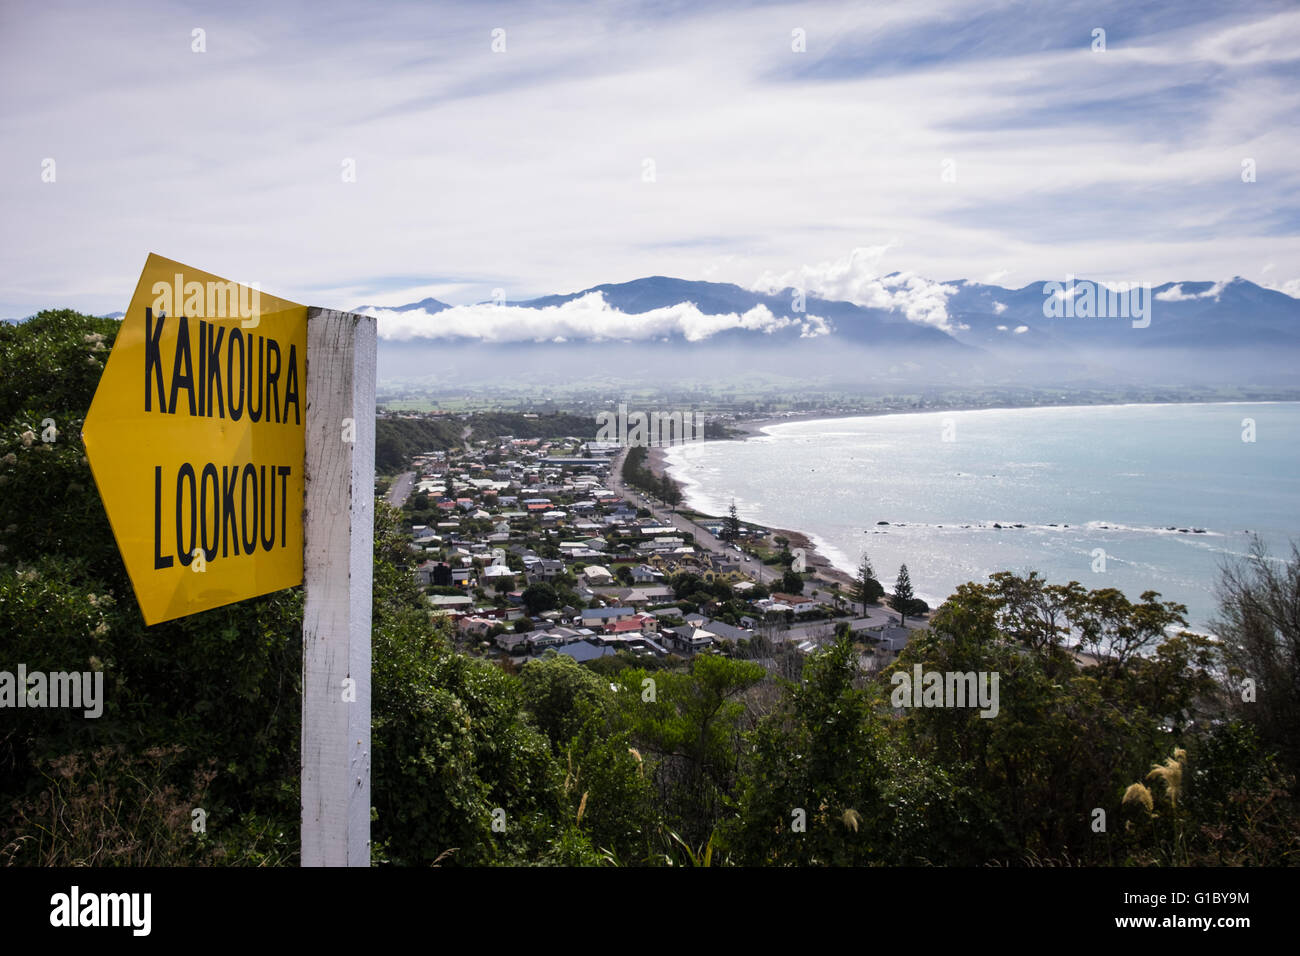 La vue depuis le chemin menant à Kaikour Lookout dans l'île Sud de la Nouvelle-Zélande Banque D'Images